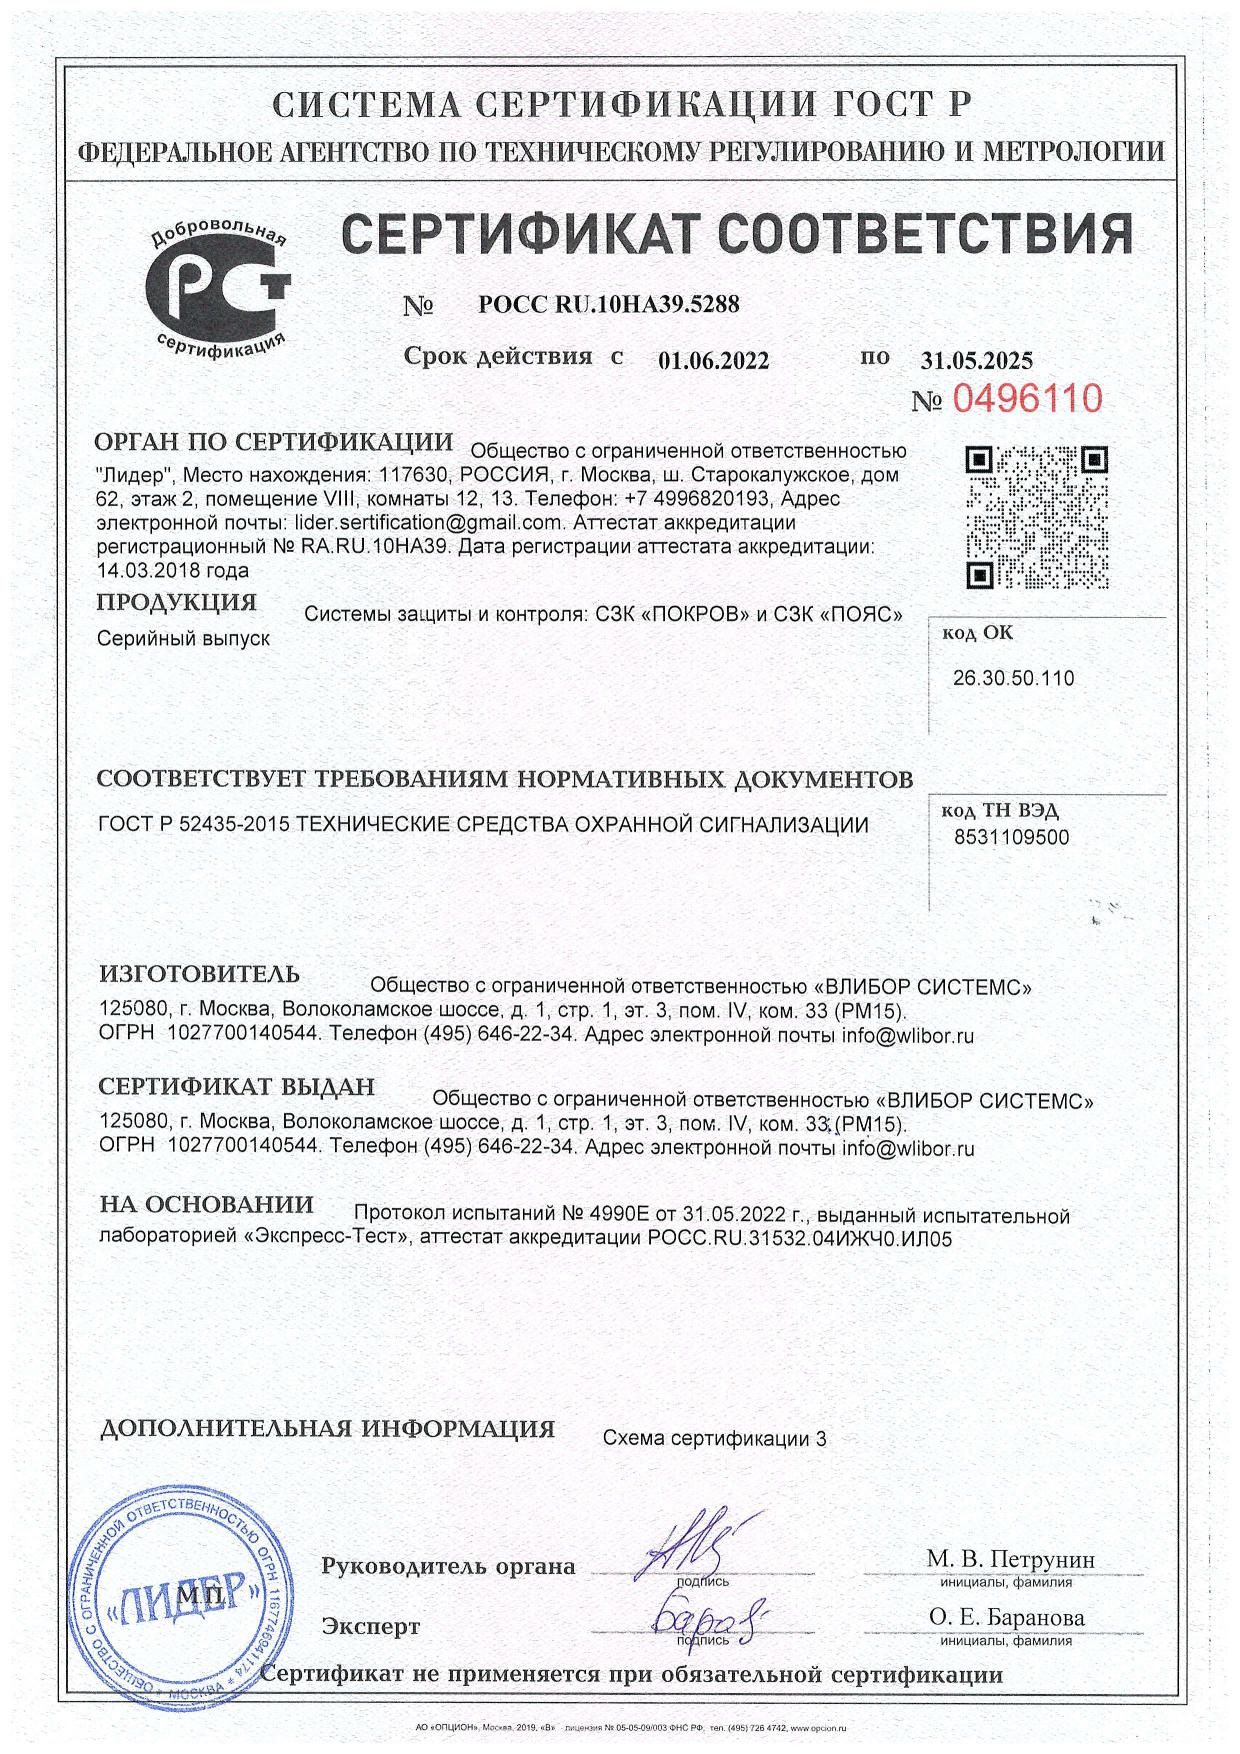 Сертификат соответствия на СЗК "ПОЯС" и СЗК "ПОКРОВ" 